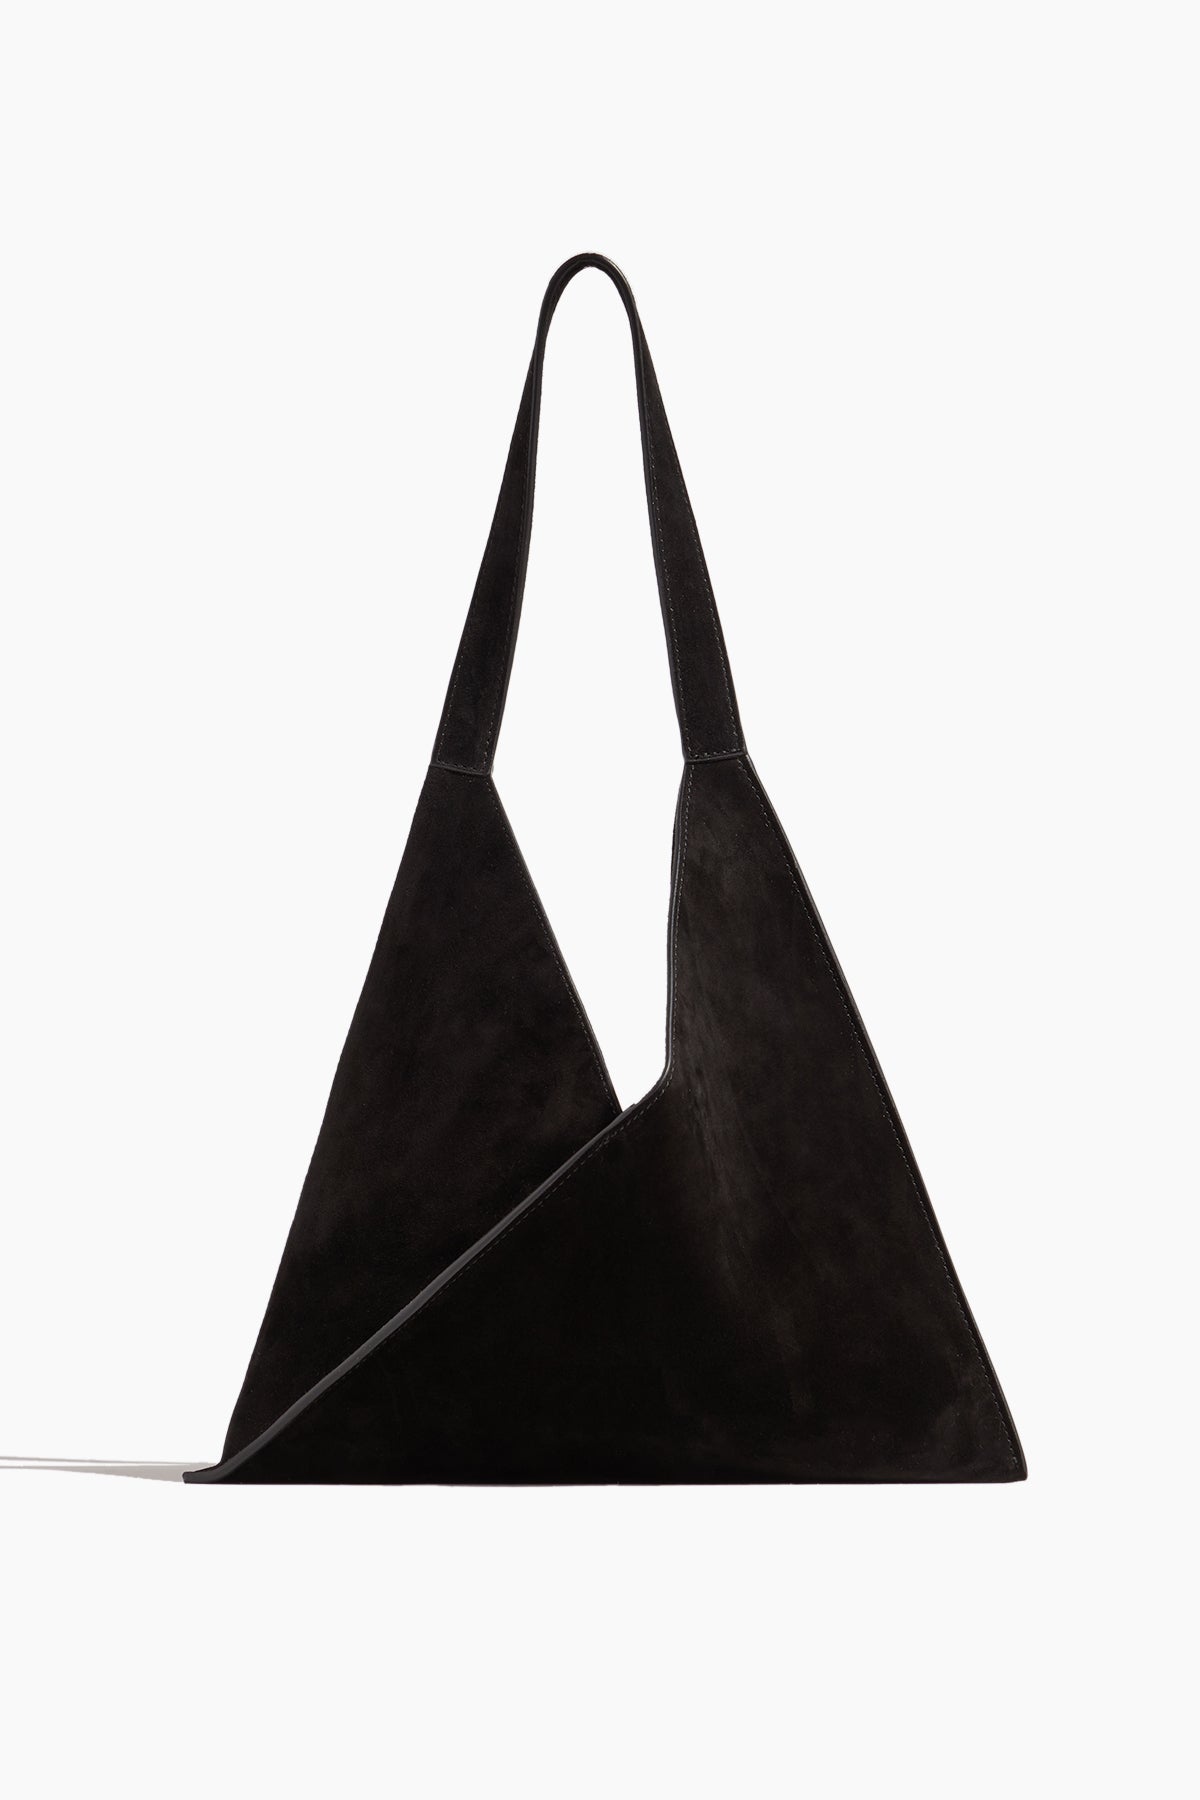 Khaite Top Handle Bags Sara Small Tote Bag in Black